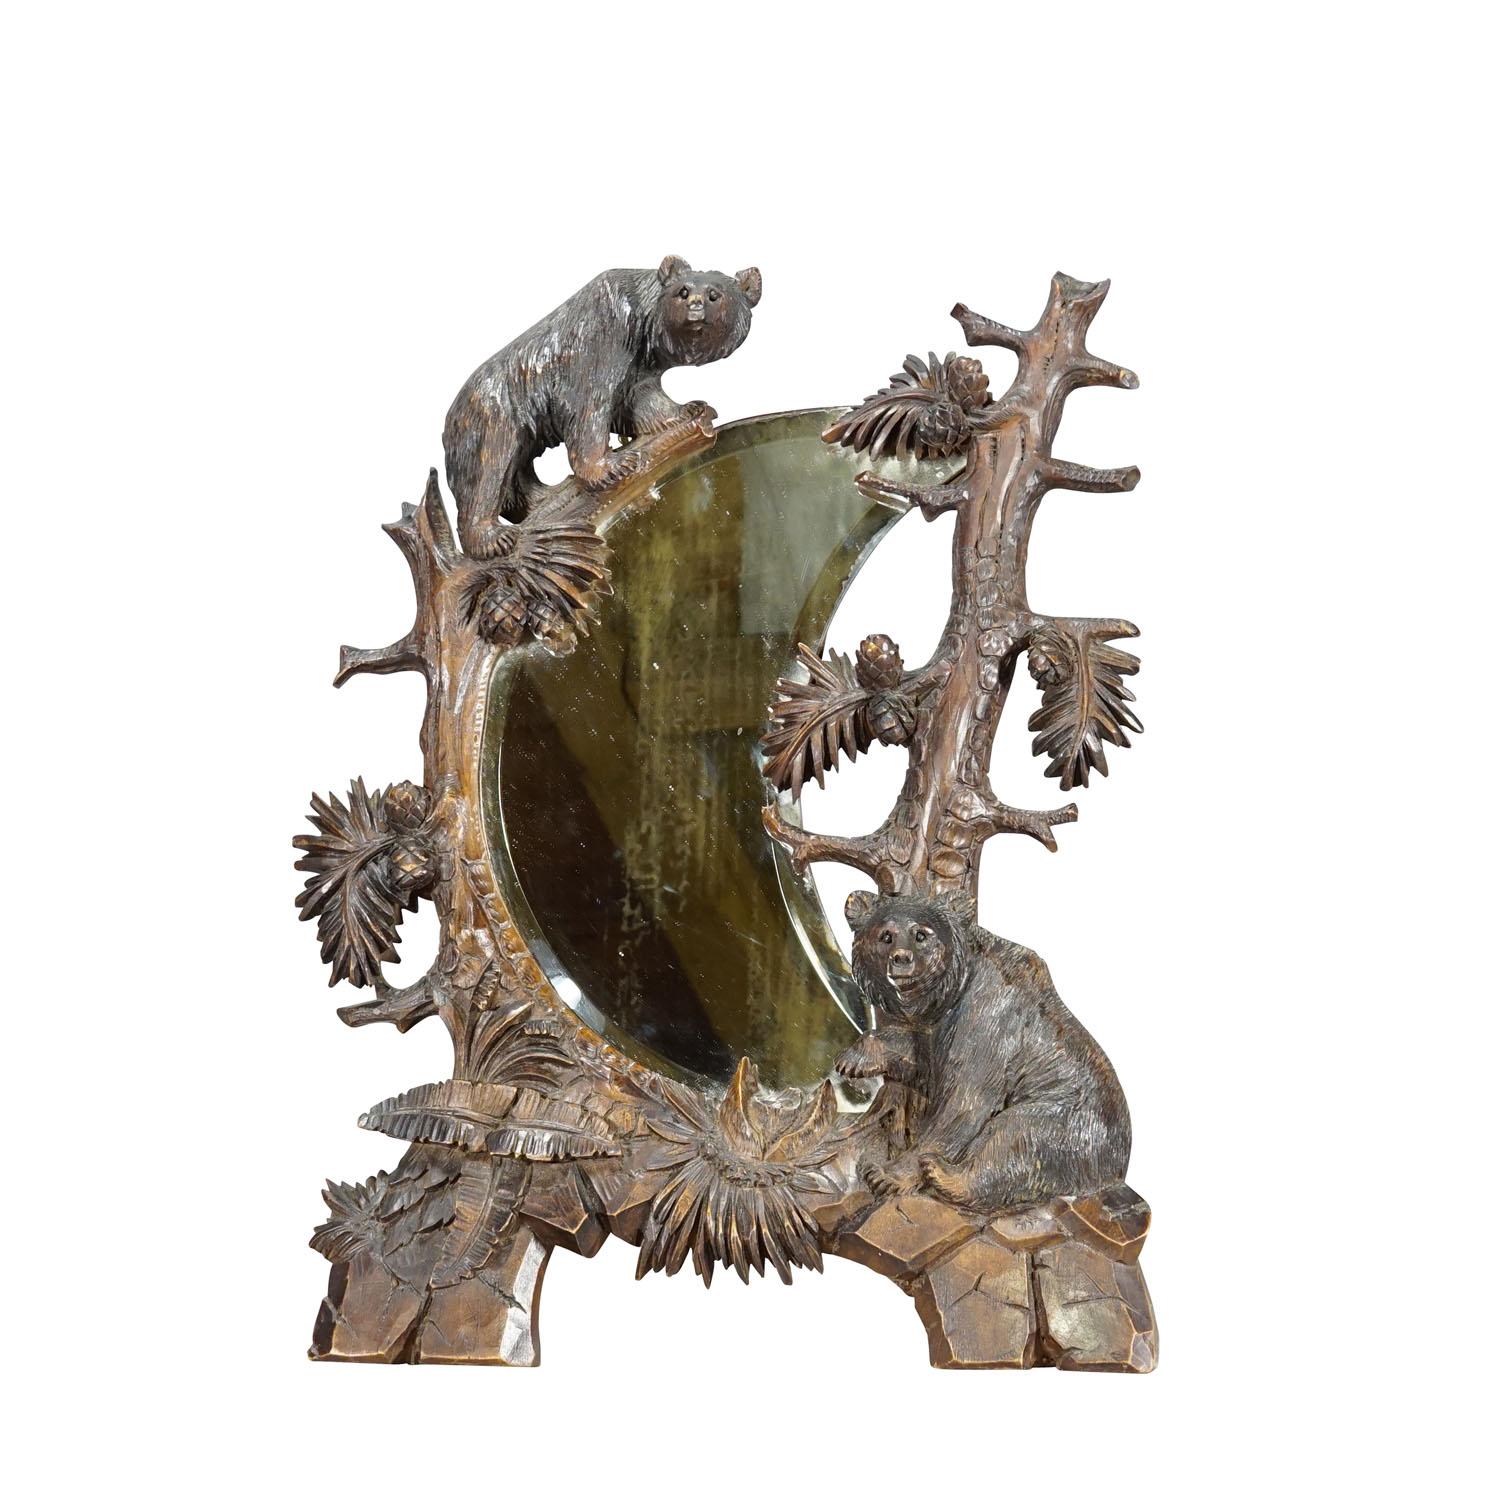 Miroir ancien en bois noir avec sculptures d'ours rustiques vers 1900

Grand miroir de courtoisie en forme de croissant dans un cadre en bois sculpté à la main, représentant deux ours grimpant dans les arbres. Fabriqué en Suisse dans les années